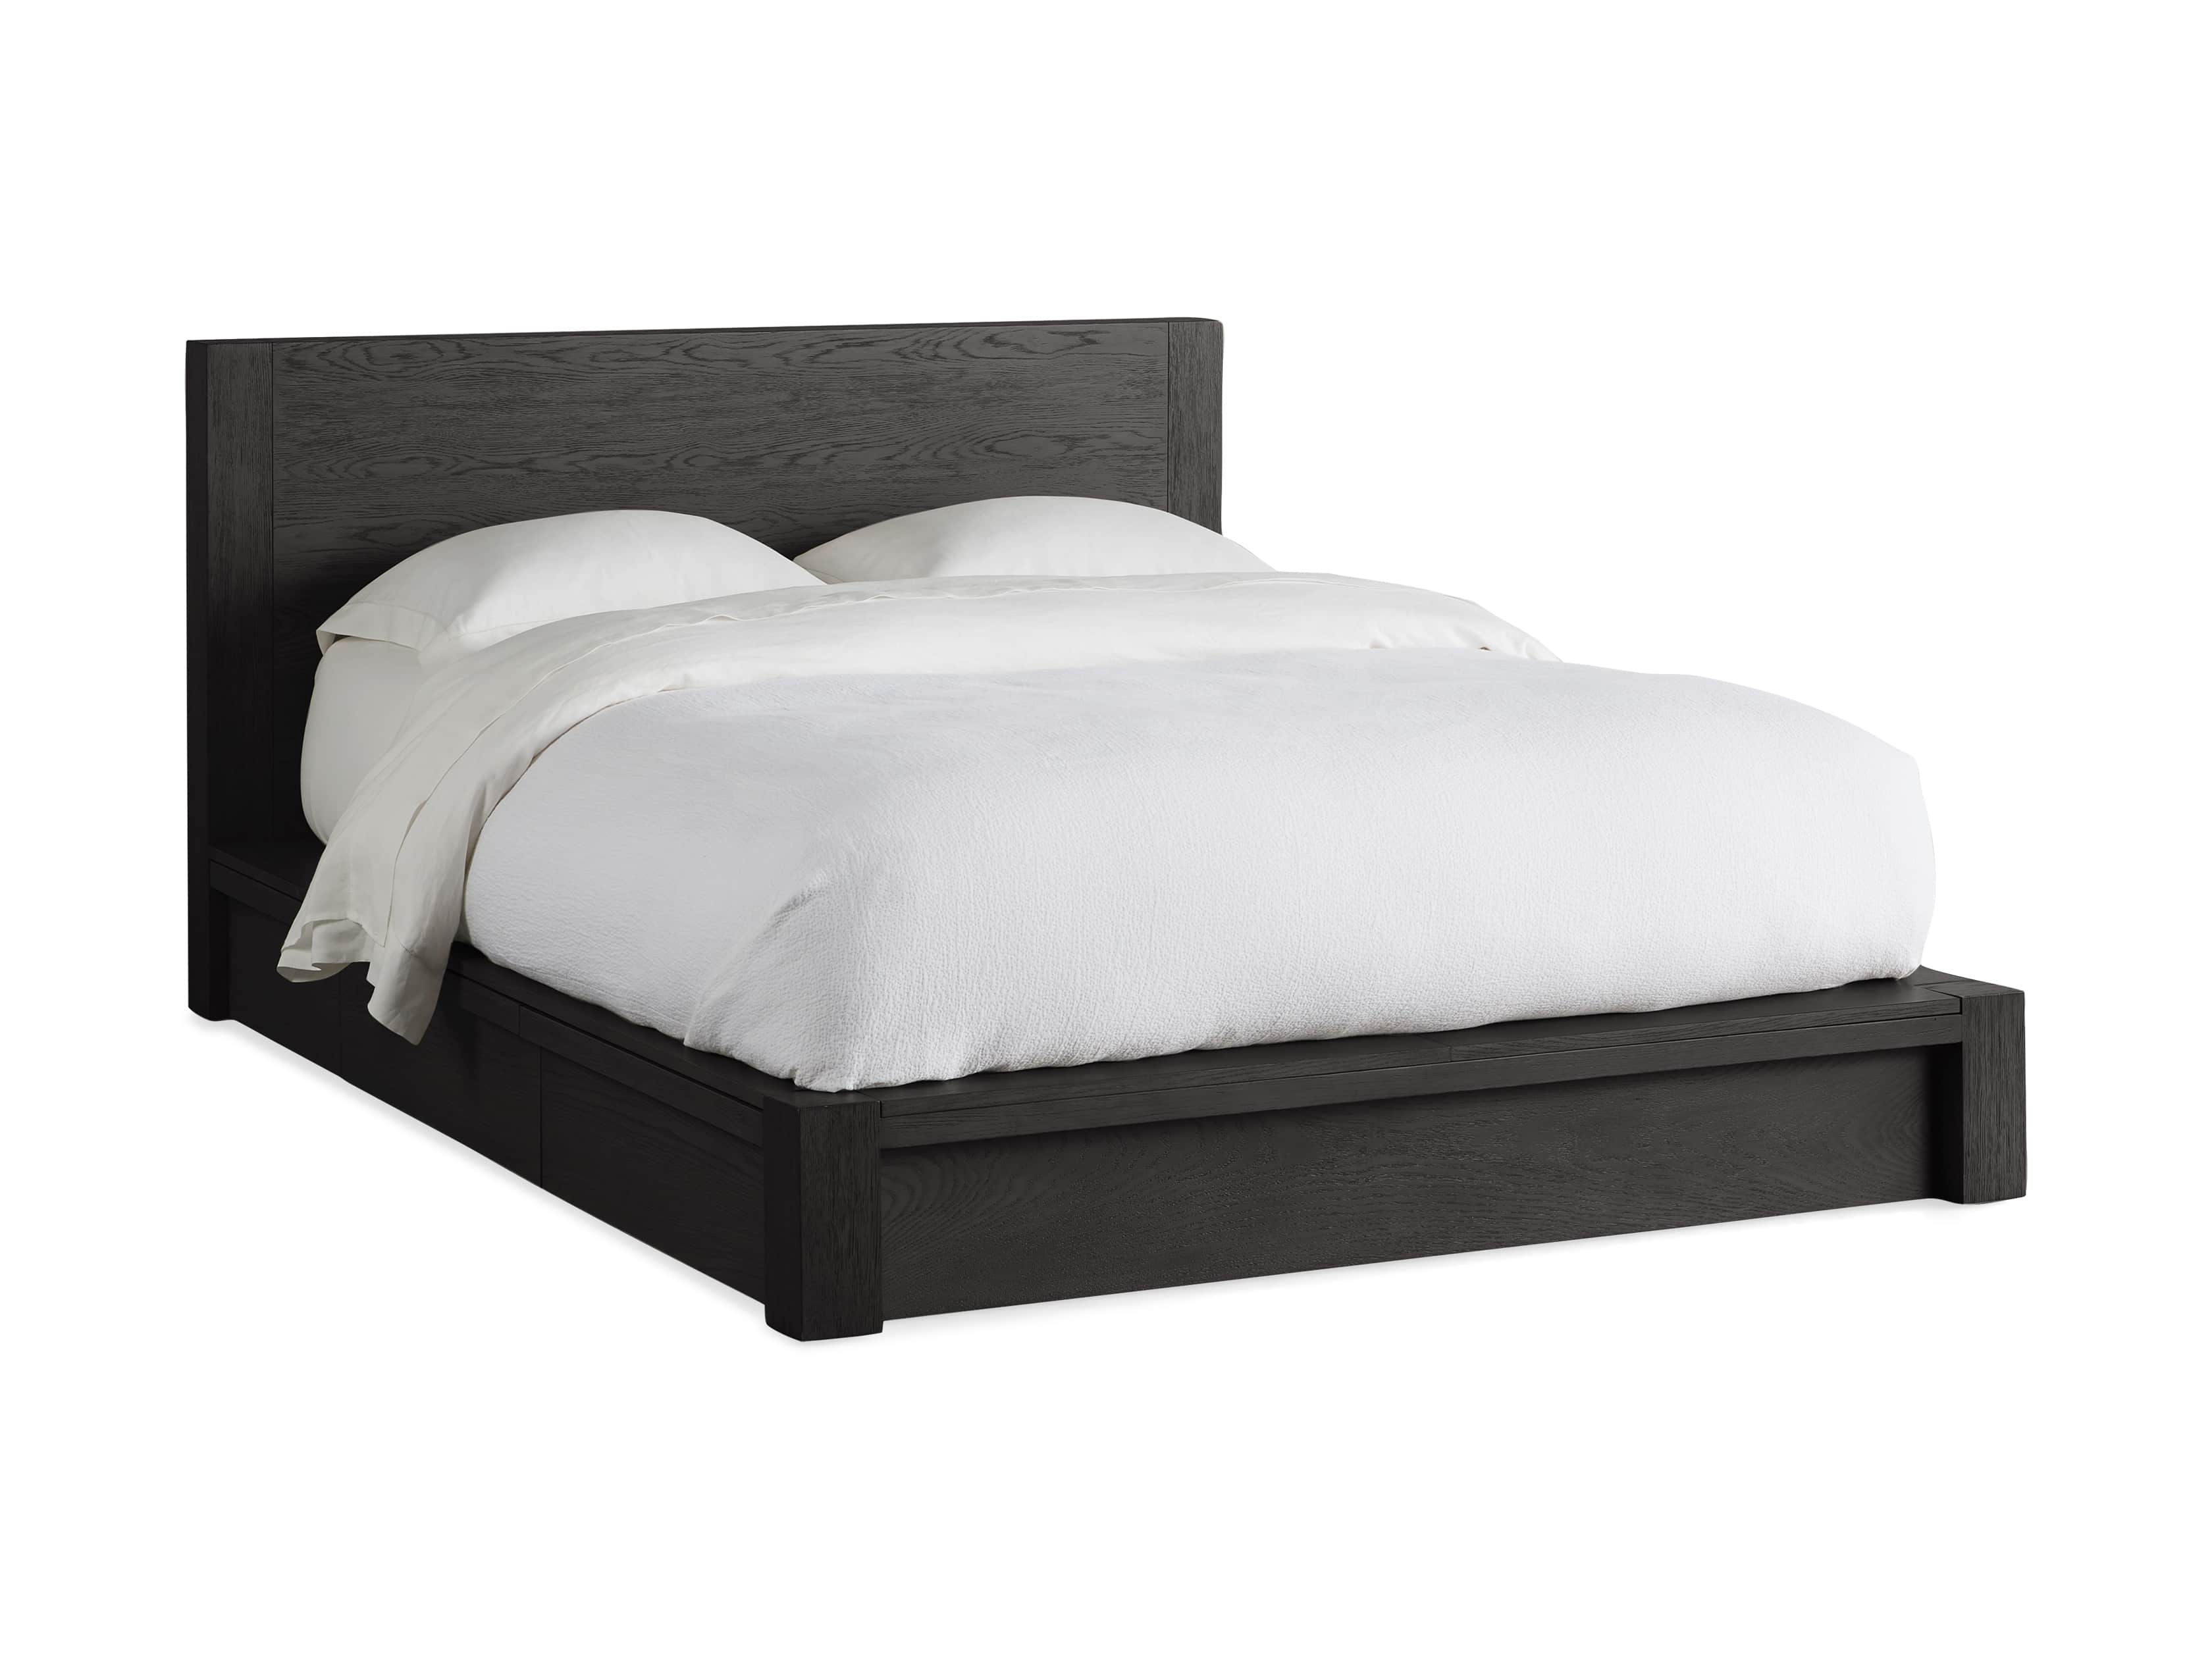 Bodhi Storage Bed Arhaus, White Full Storage Bed Frame